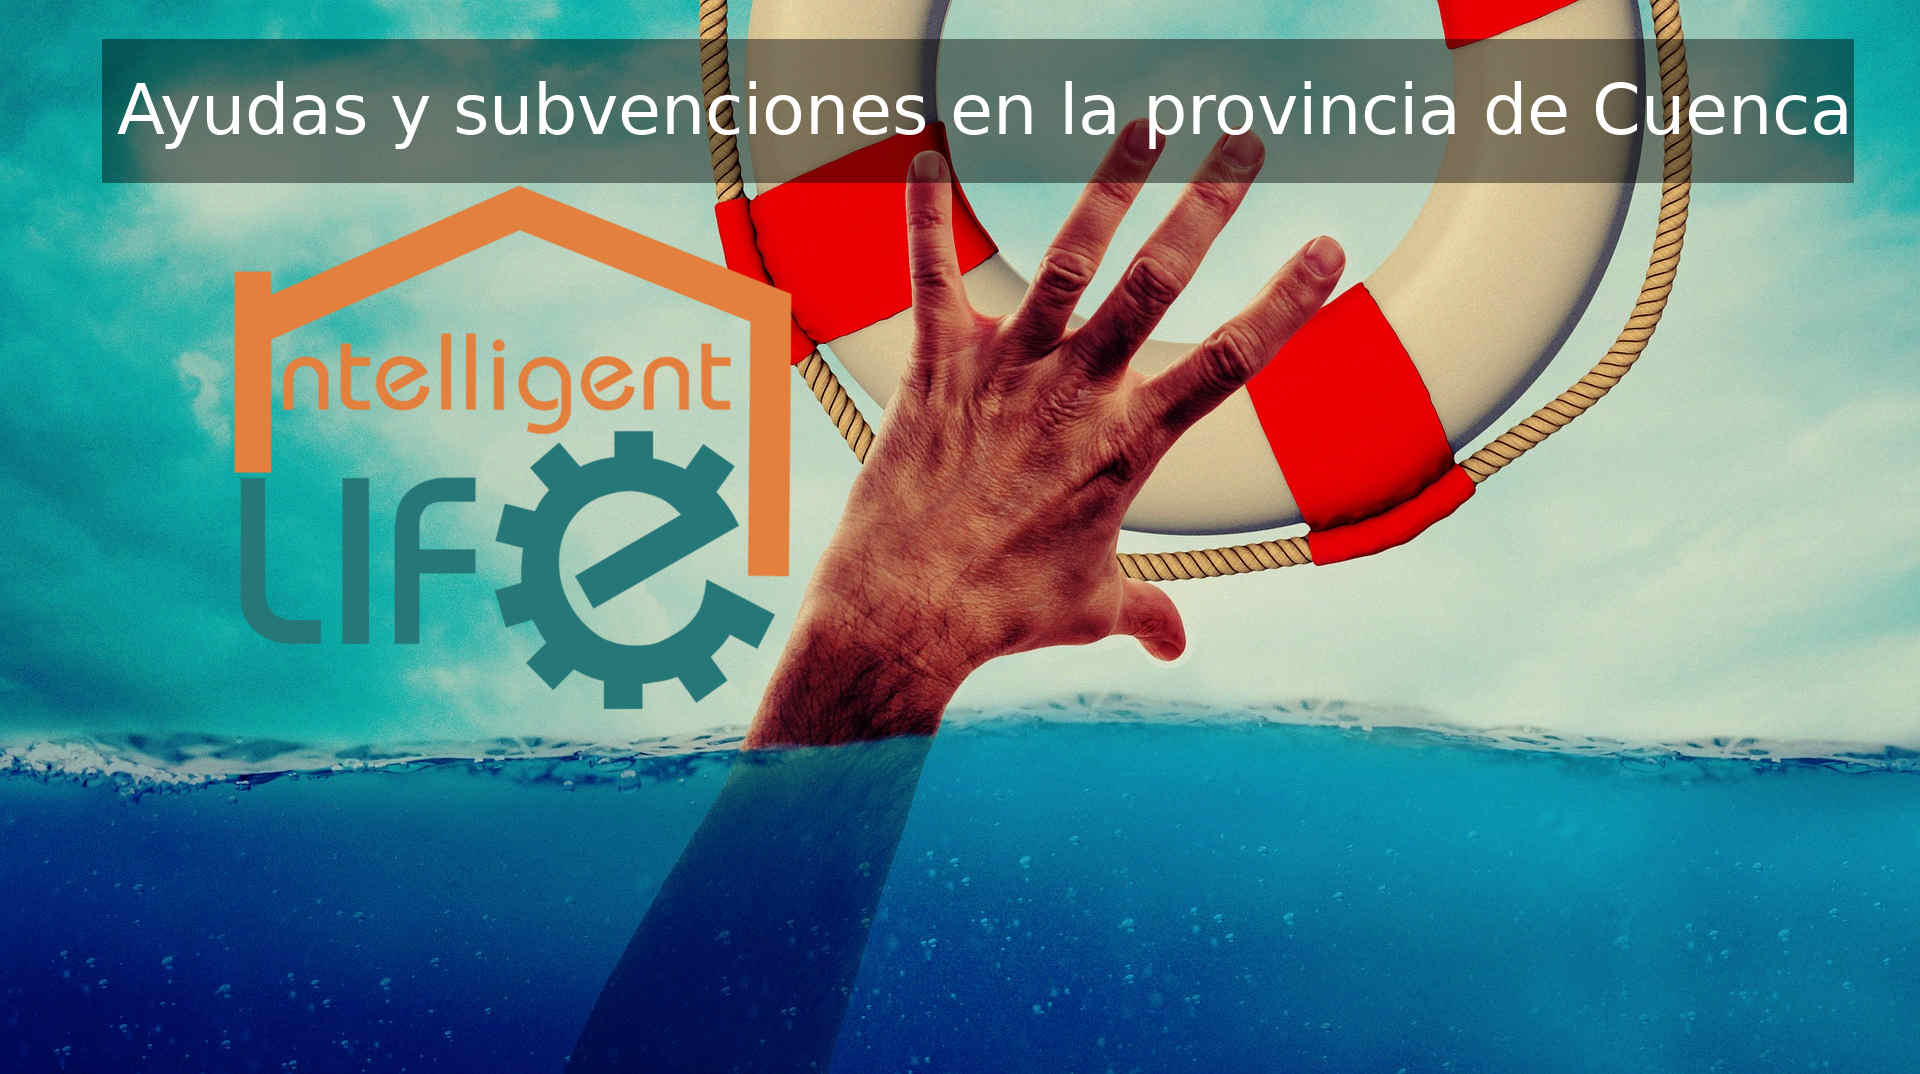 Ayudas y subvenciones en la provincia de Cuenca